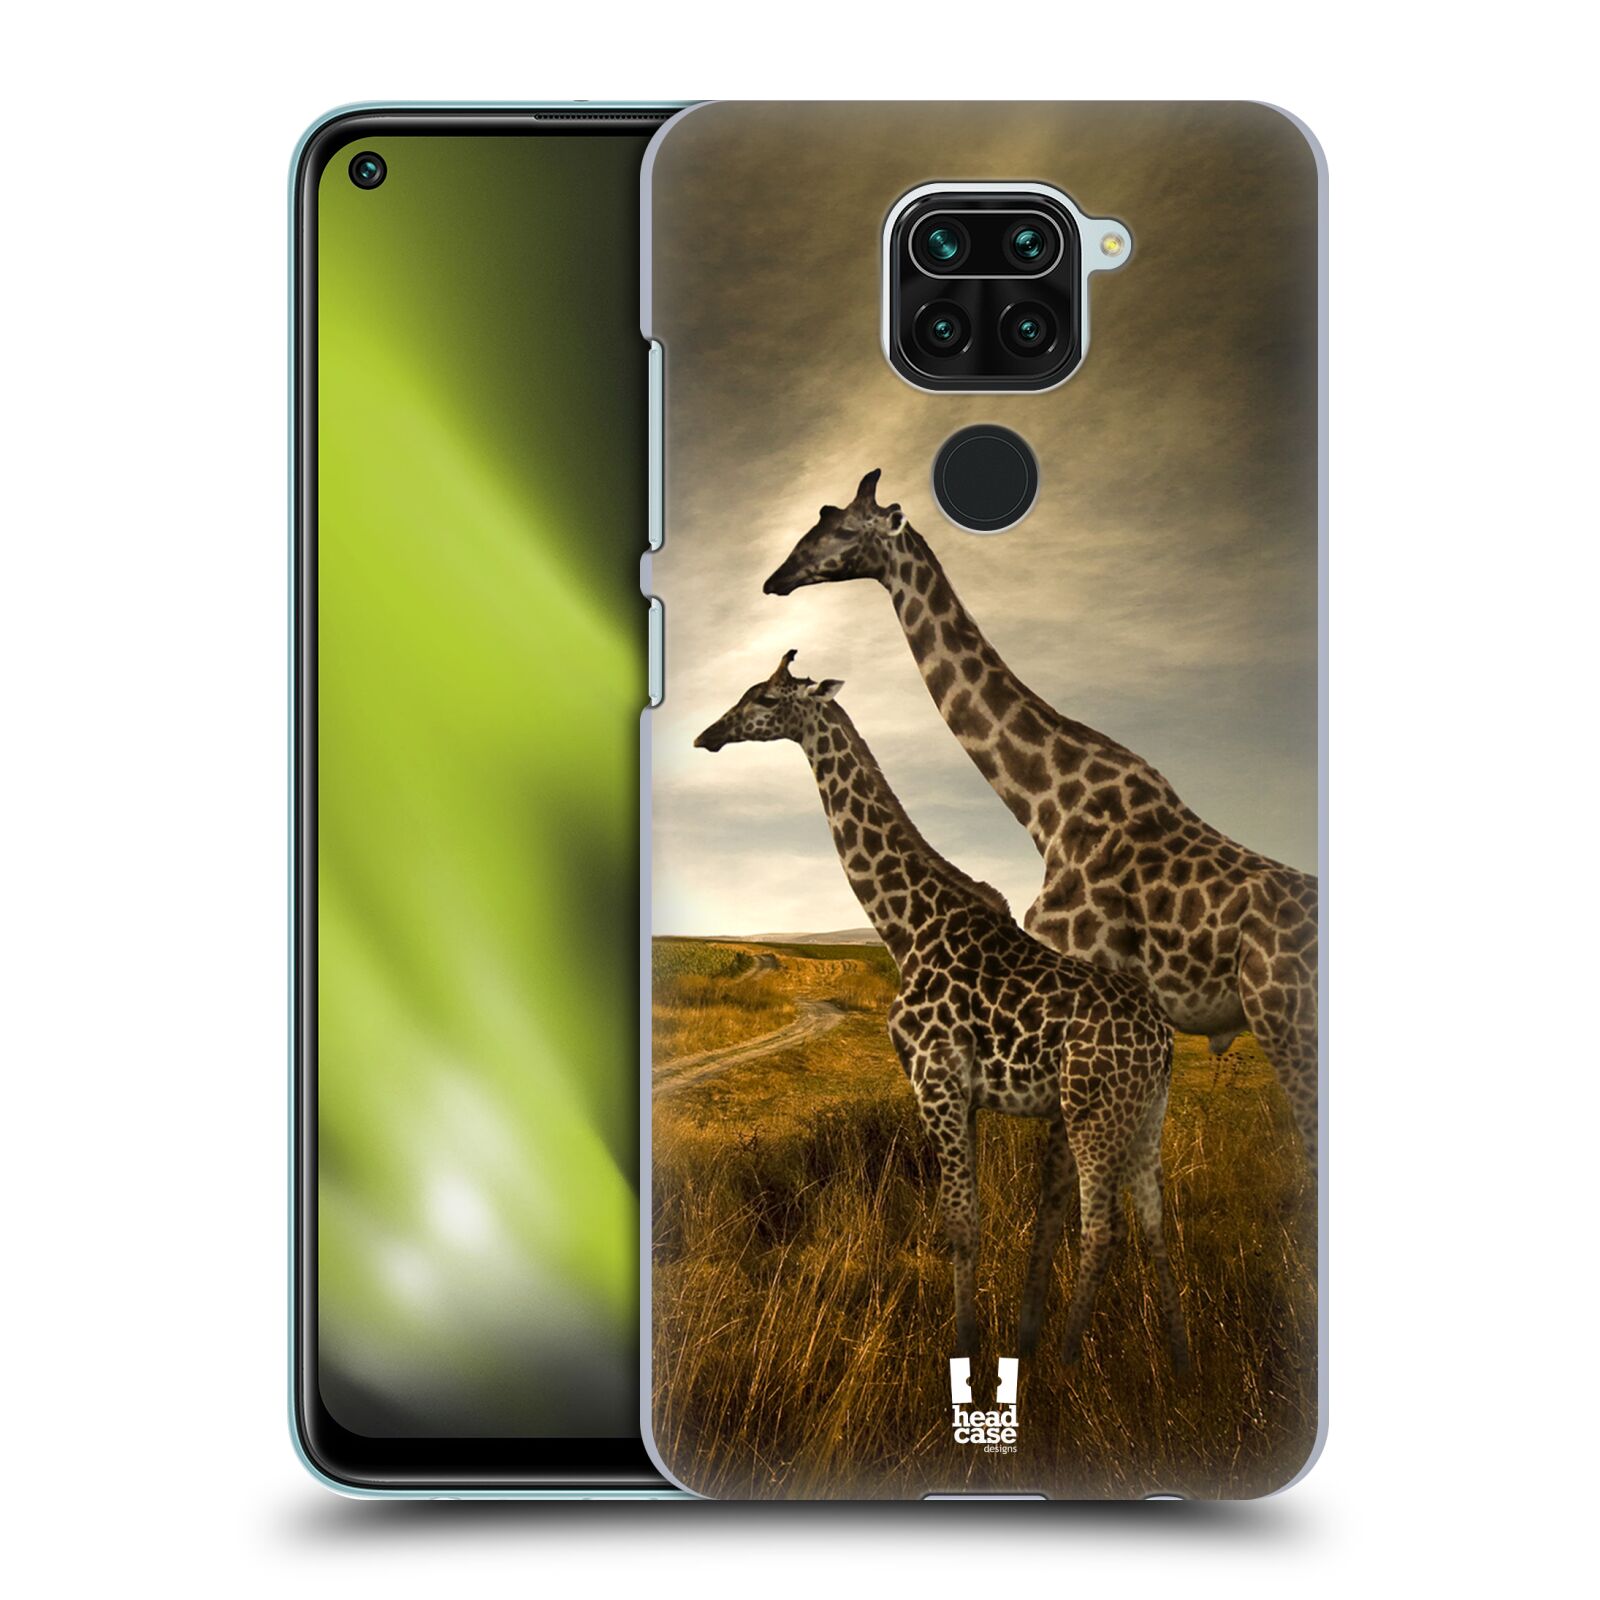 Zadní obal pro mobil Xiaomi Redmi Note 9 - HEAD CASE - Svět zvířat žirafy